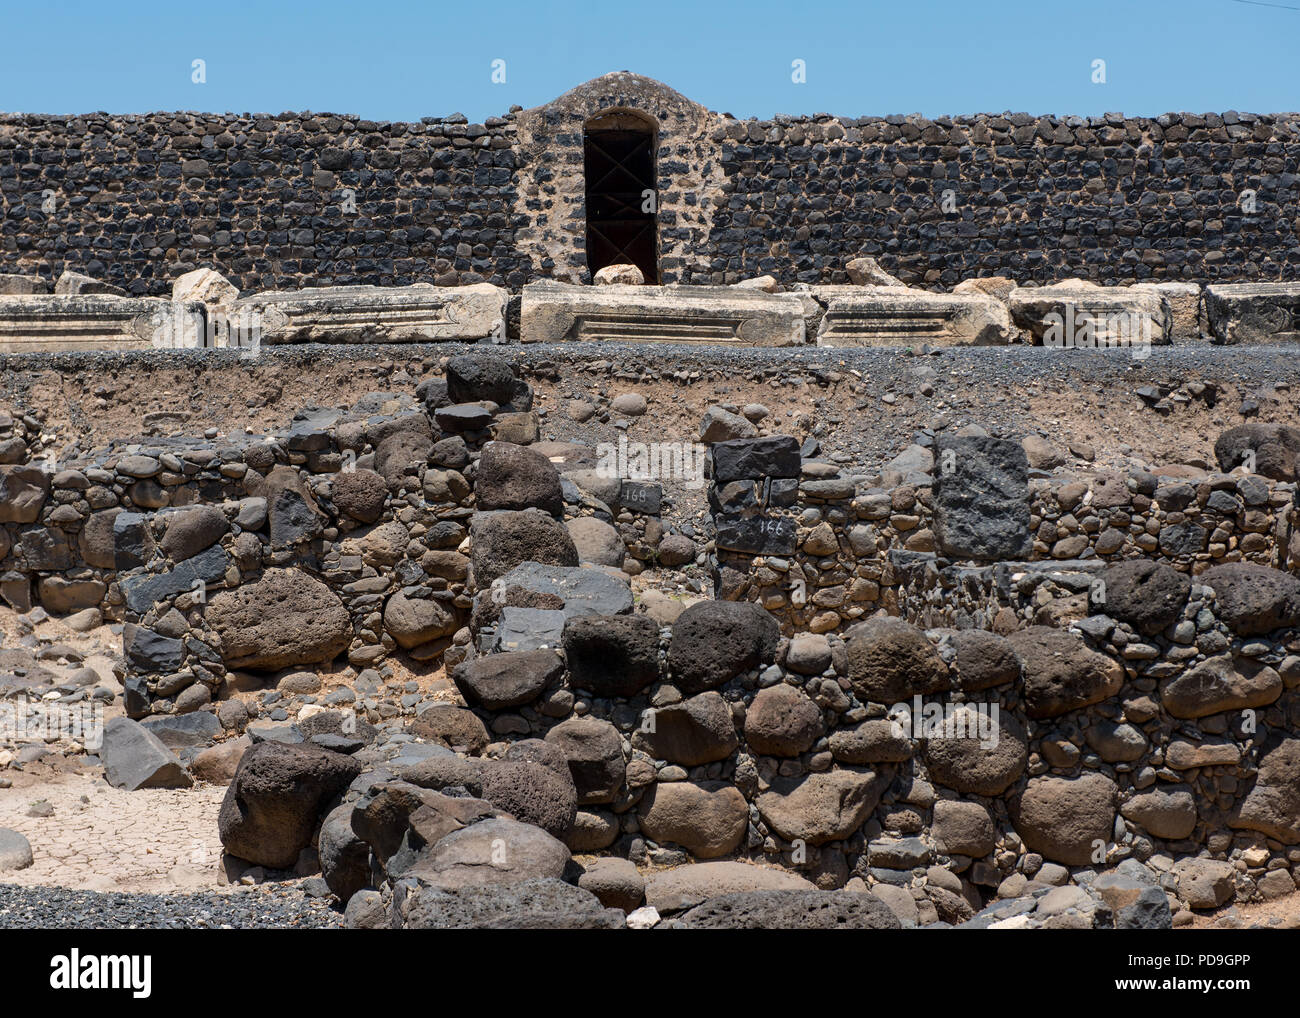 Mur des ruines du village de basalte sombre Capharnaüm, sur les bords de la mer de Galilée, où Jésus et saint Pierre a vécu et s'est réuni Banque D'Images